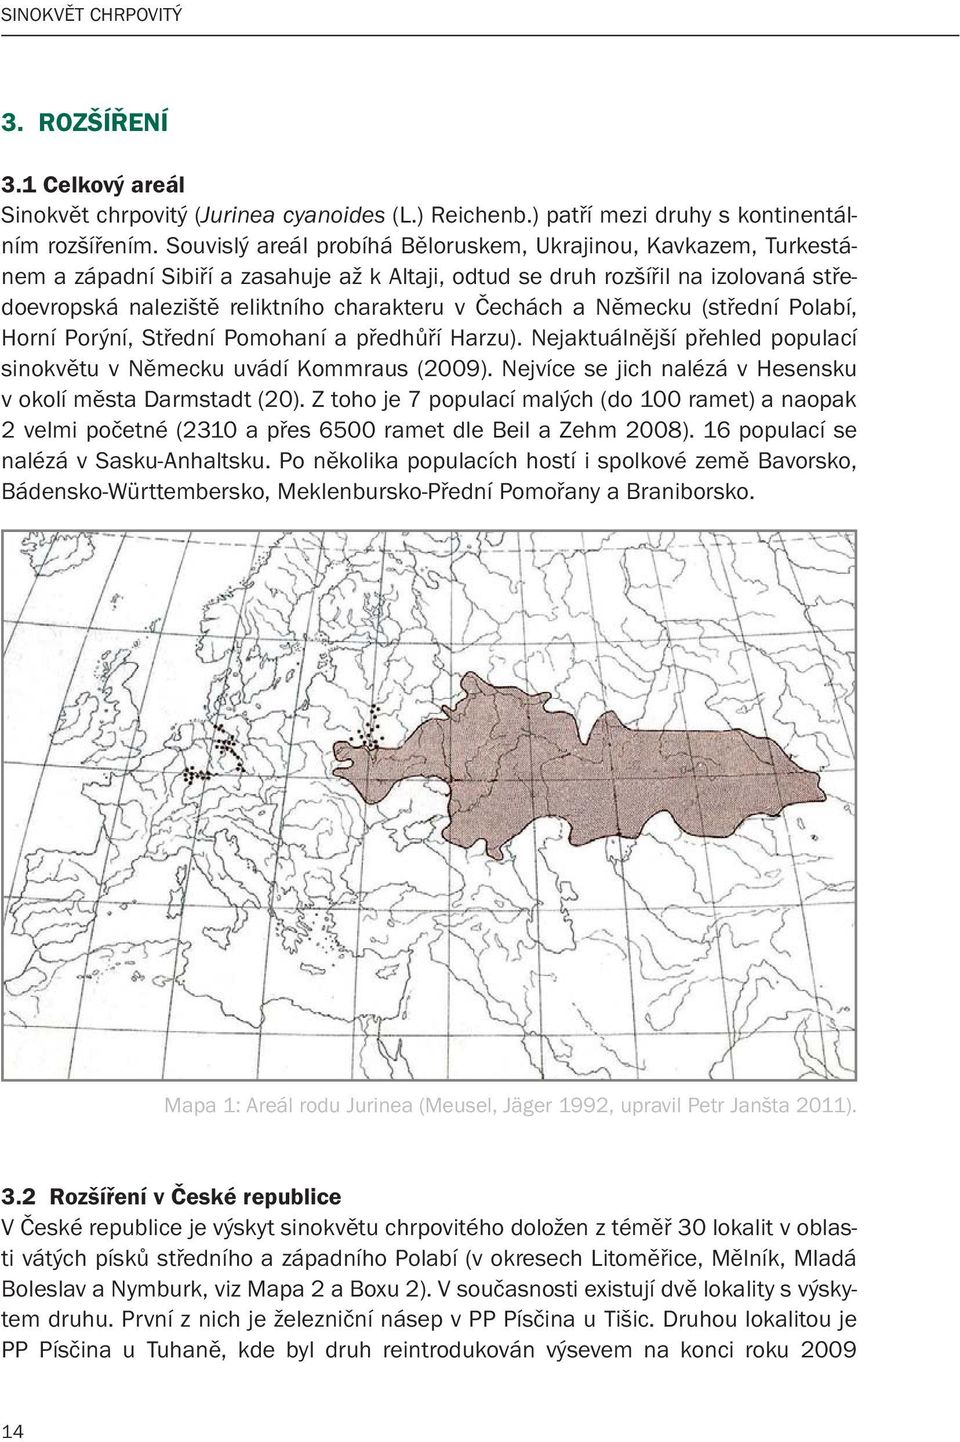 Čechách a Německu (střední Polabí, Horní Porýní, Střední Pomohaní a předhůří Harzu). Nejaktuálnější přehled populací sinokvětu v Německu uvádí Kommraus (2009).